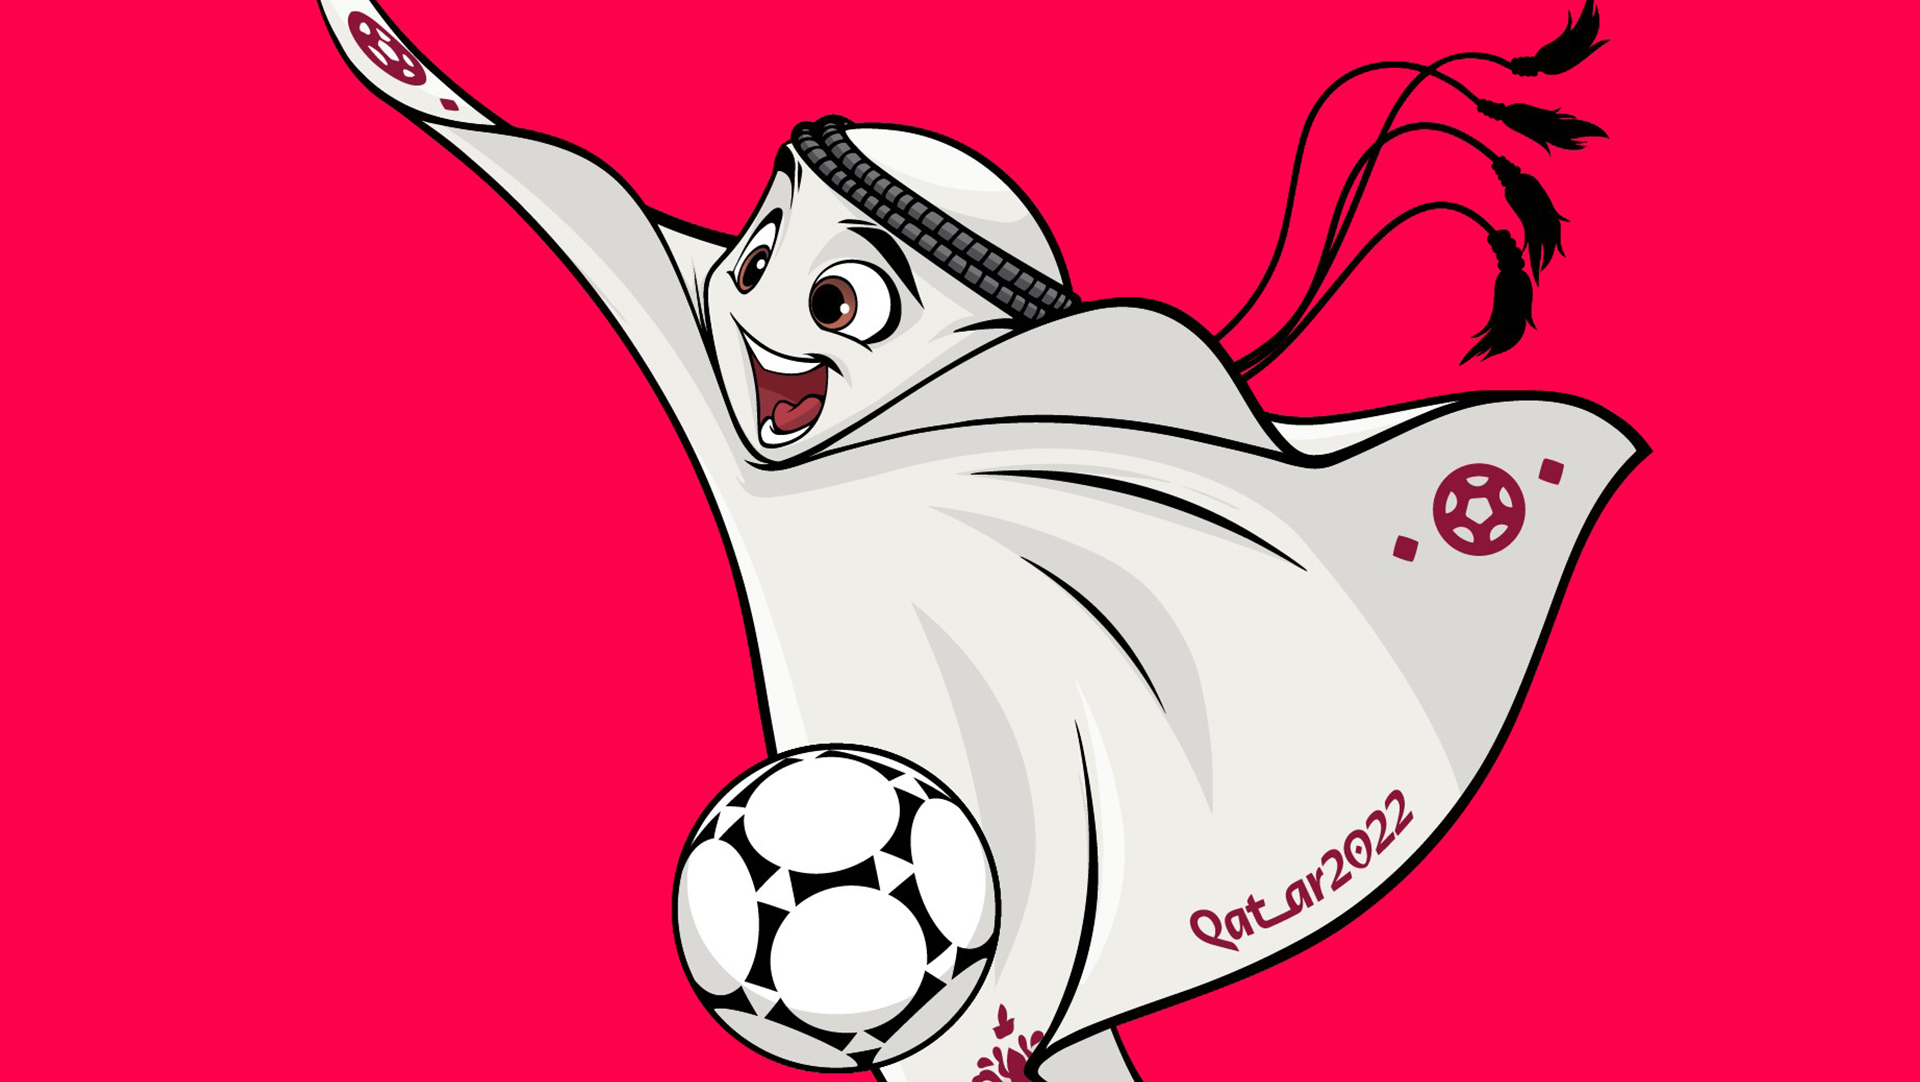 Laeeb - Qatar FIFA World Cup Mascot 3D model 3D model